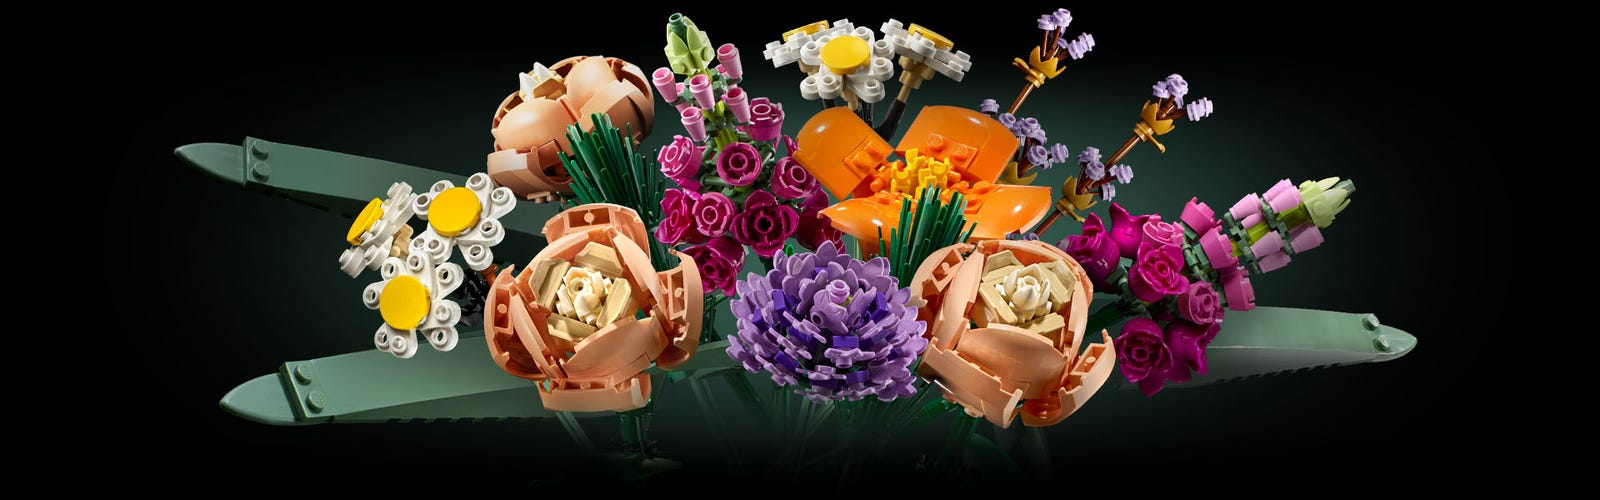 LEGO® Flower Bouquet | Official LEGO® Shop US